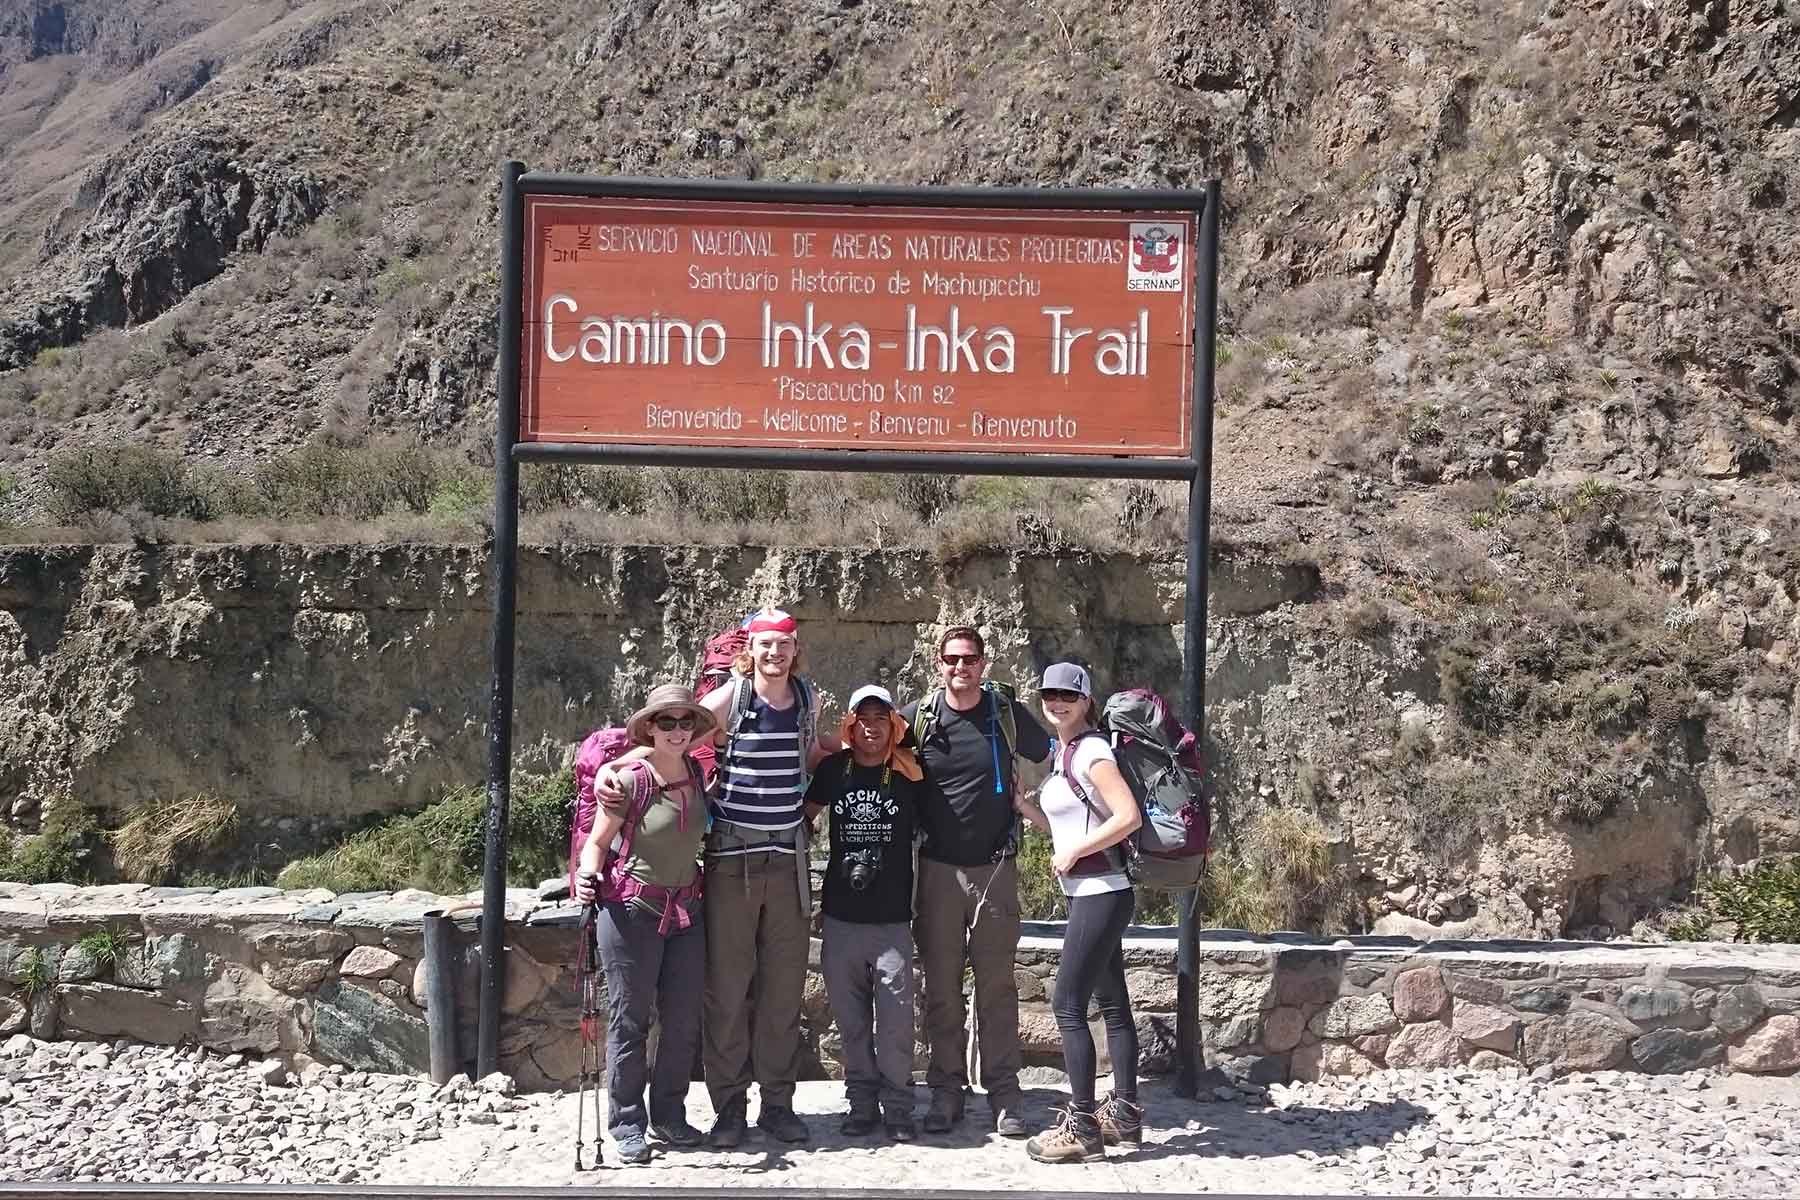 2 Day Inca Trail Via Llactapata Trek